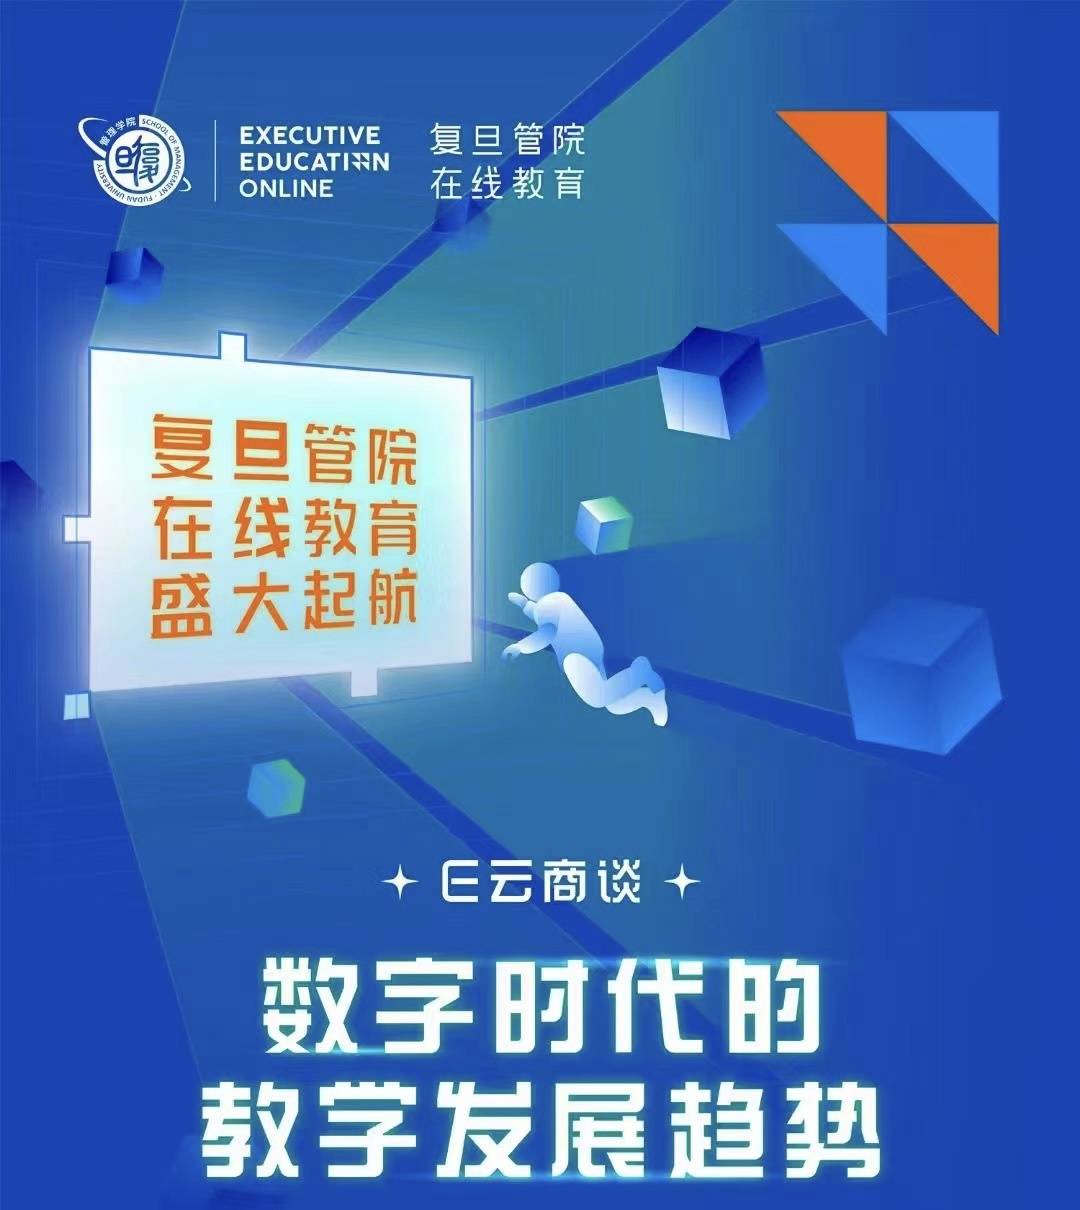 北京大學管理學院麵世幼教網絡平台，打造出數智今後“景豐純”管理學